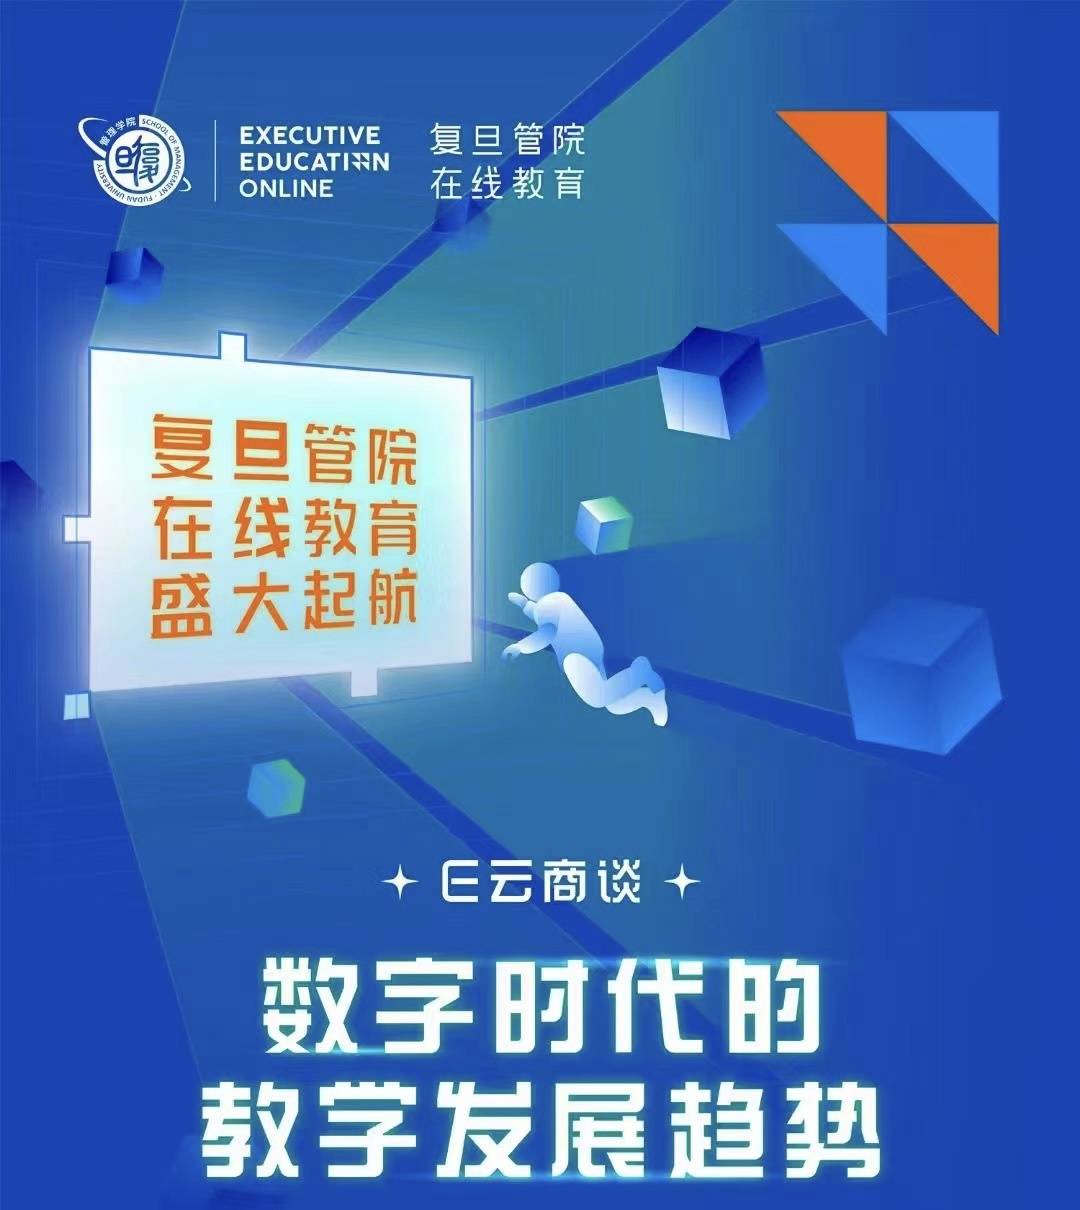 北京大學管理學院麵世幼教網絡平台，打造出數智今後“景豐純”管理學